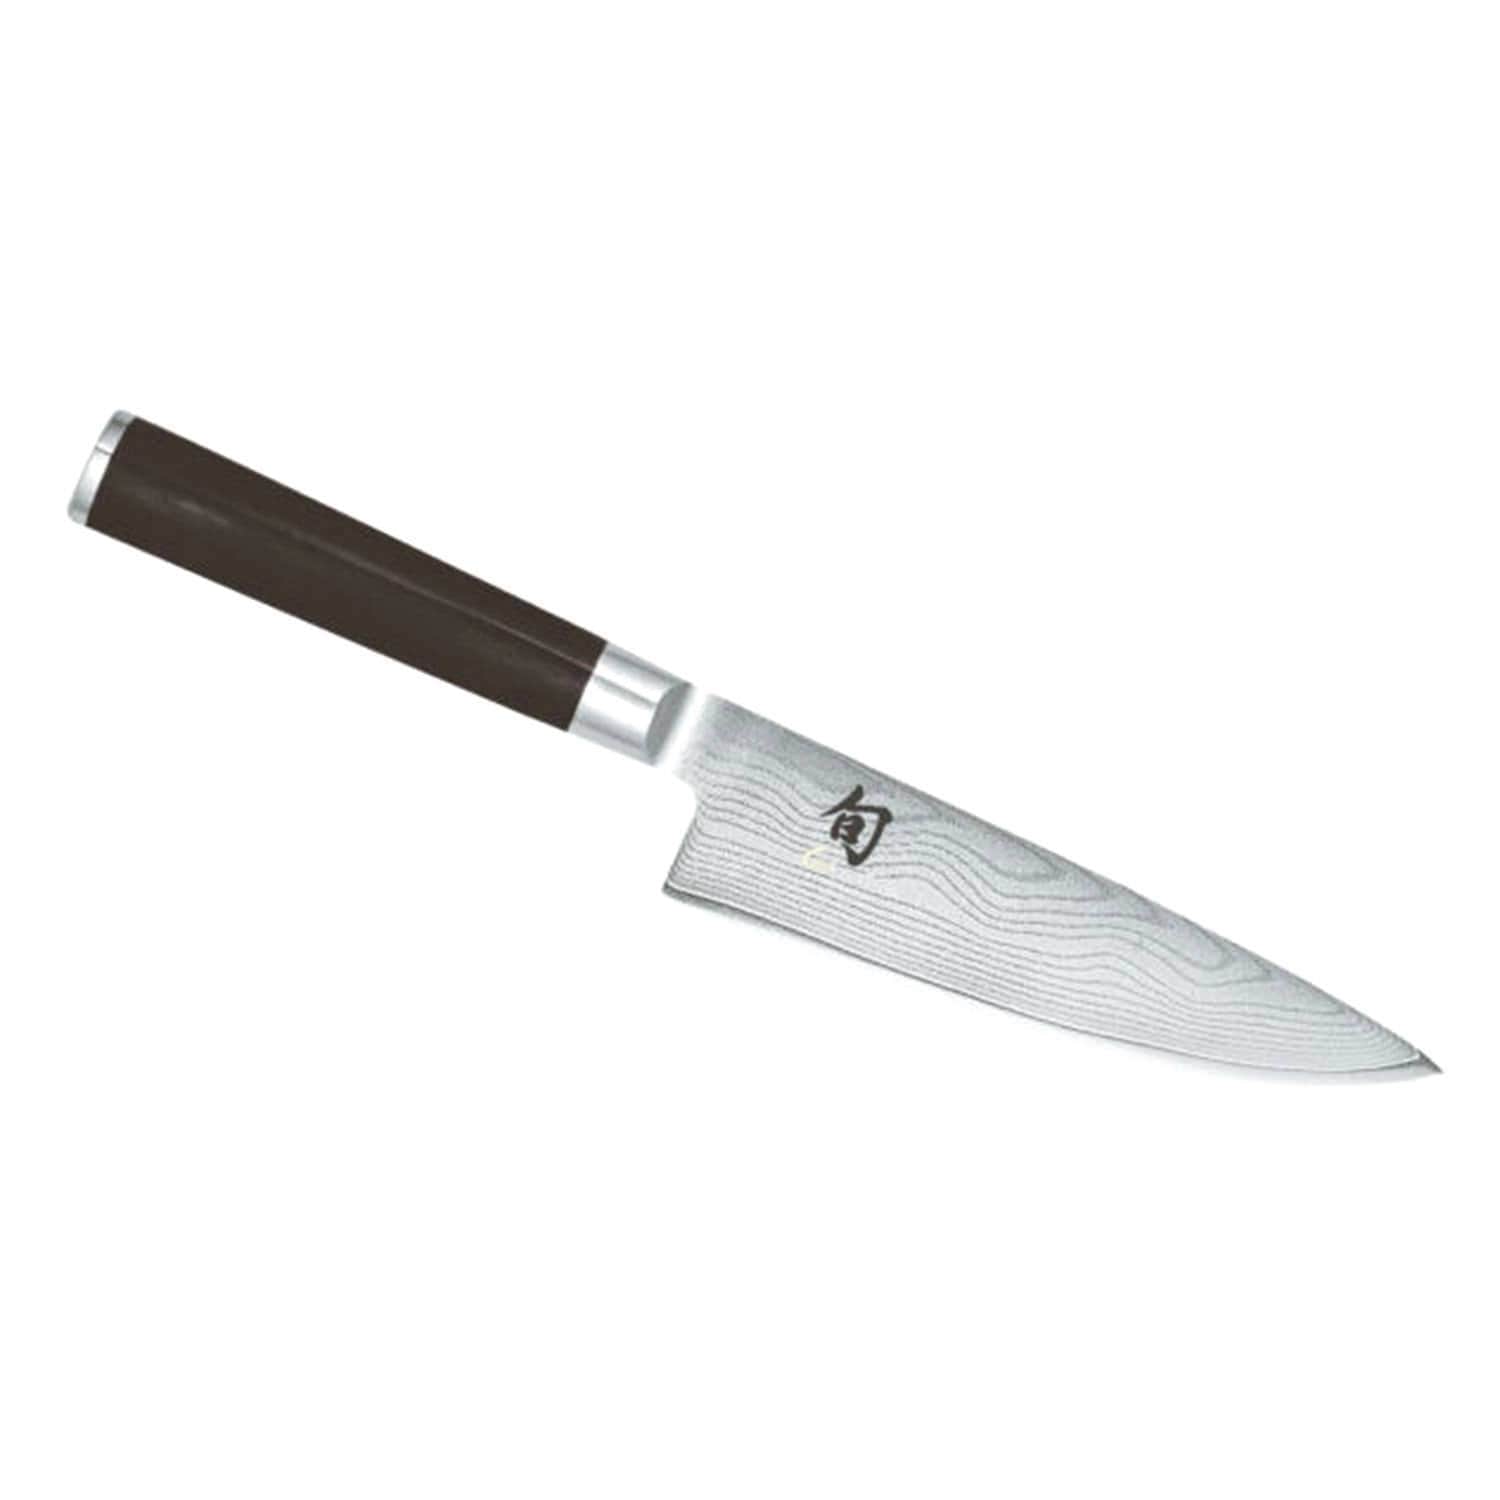 Kai Shun 6 Chef Knife - Black, 15 cm - DM-0723 - Jashanmal Home